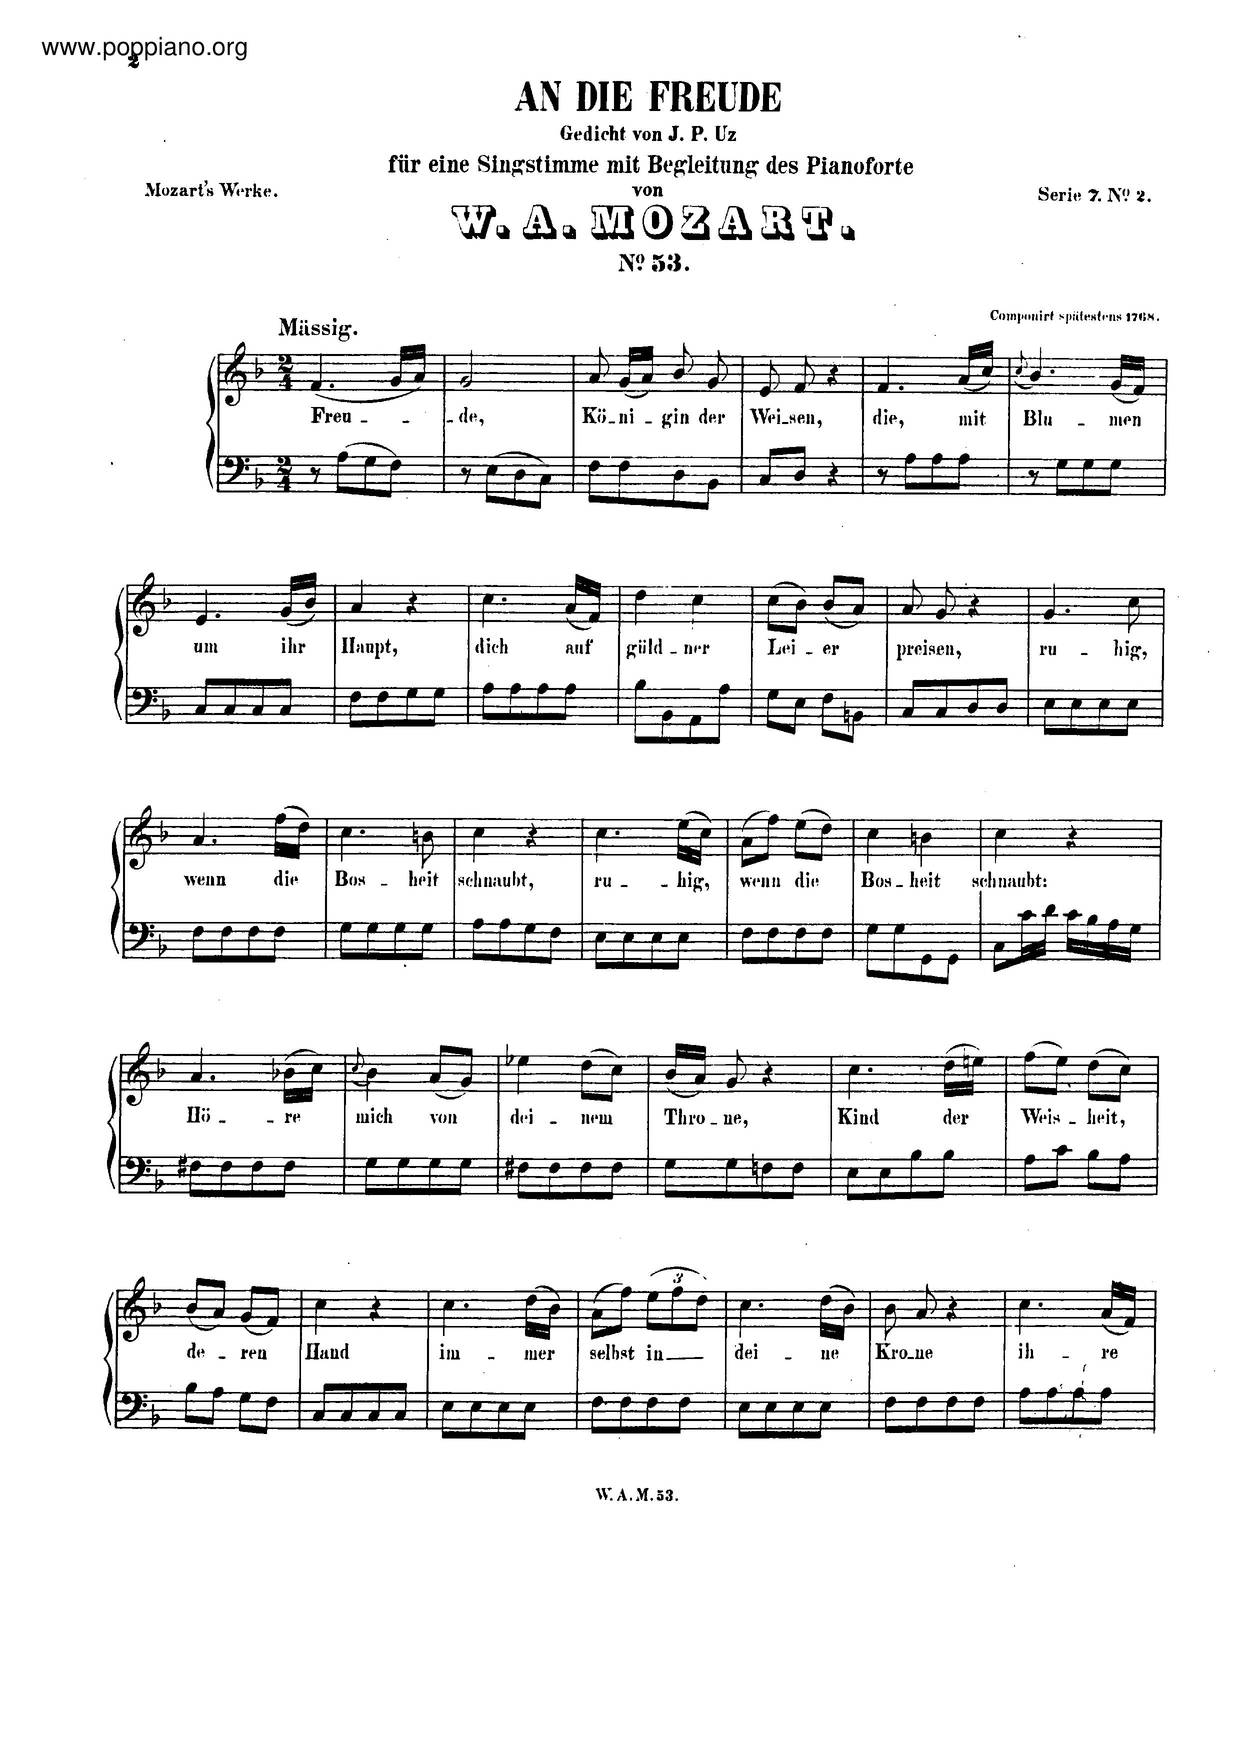 An Die Freude, K. 53/47Eピアノ譜